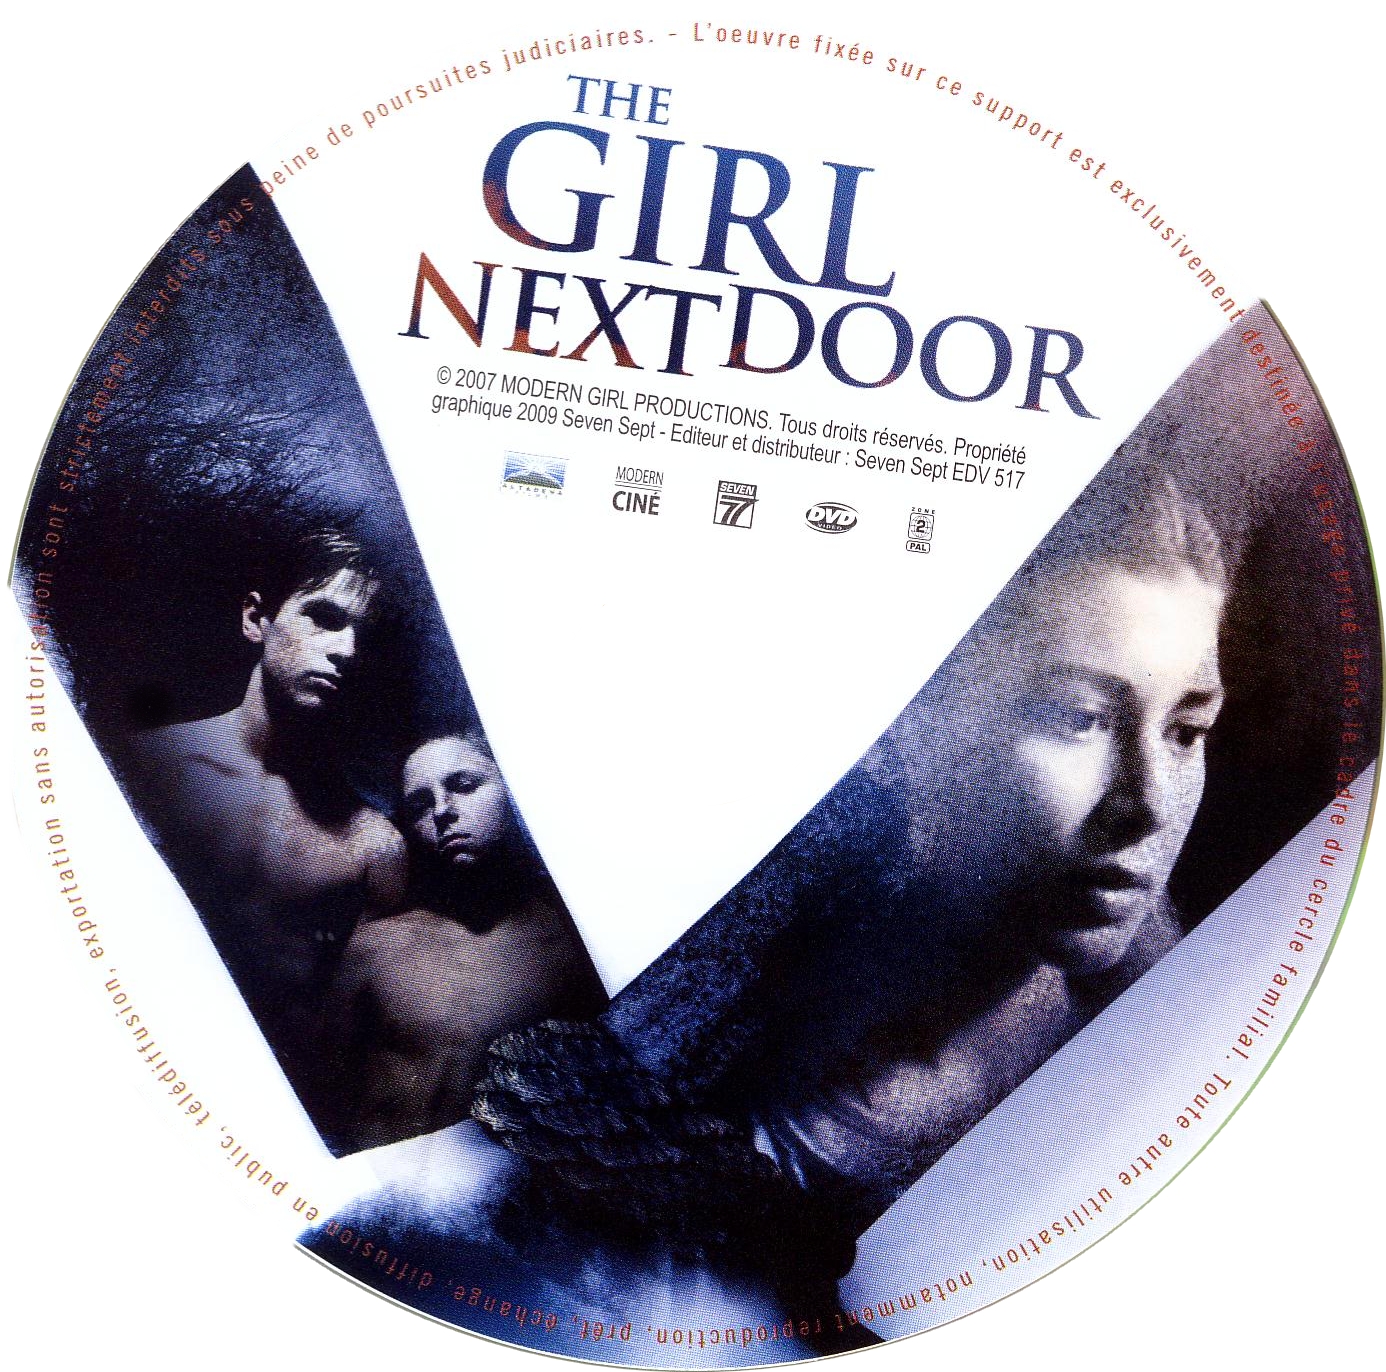 The girl next door (2008)